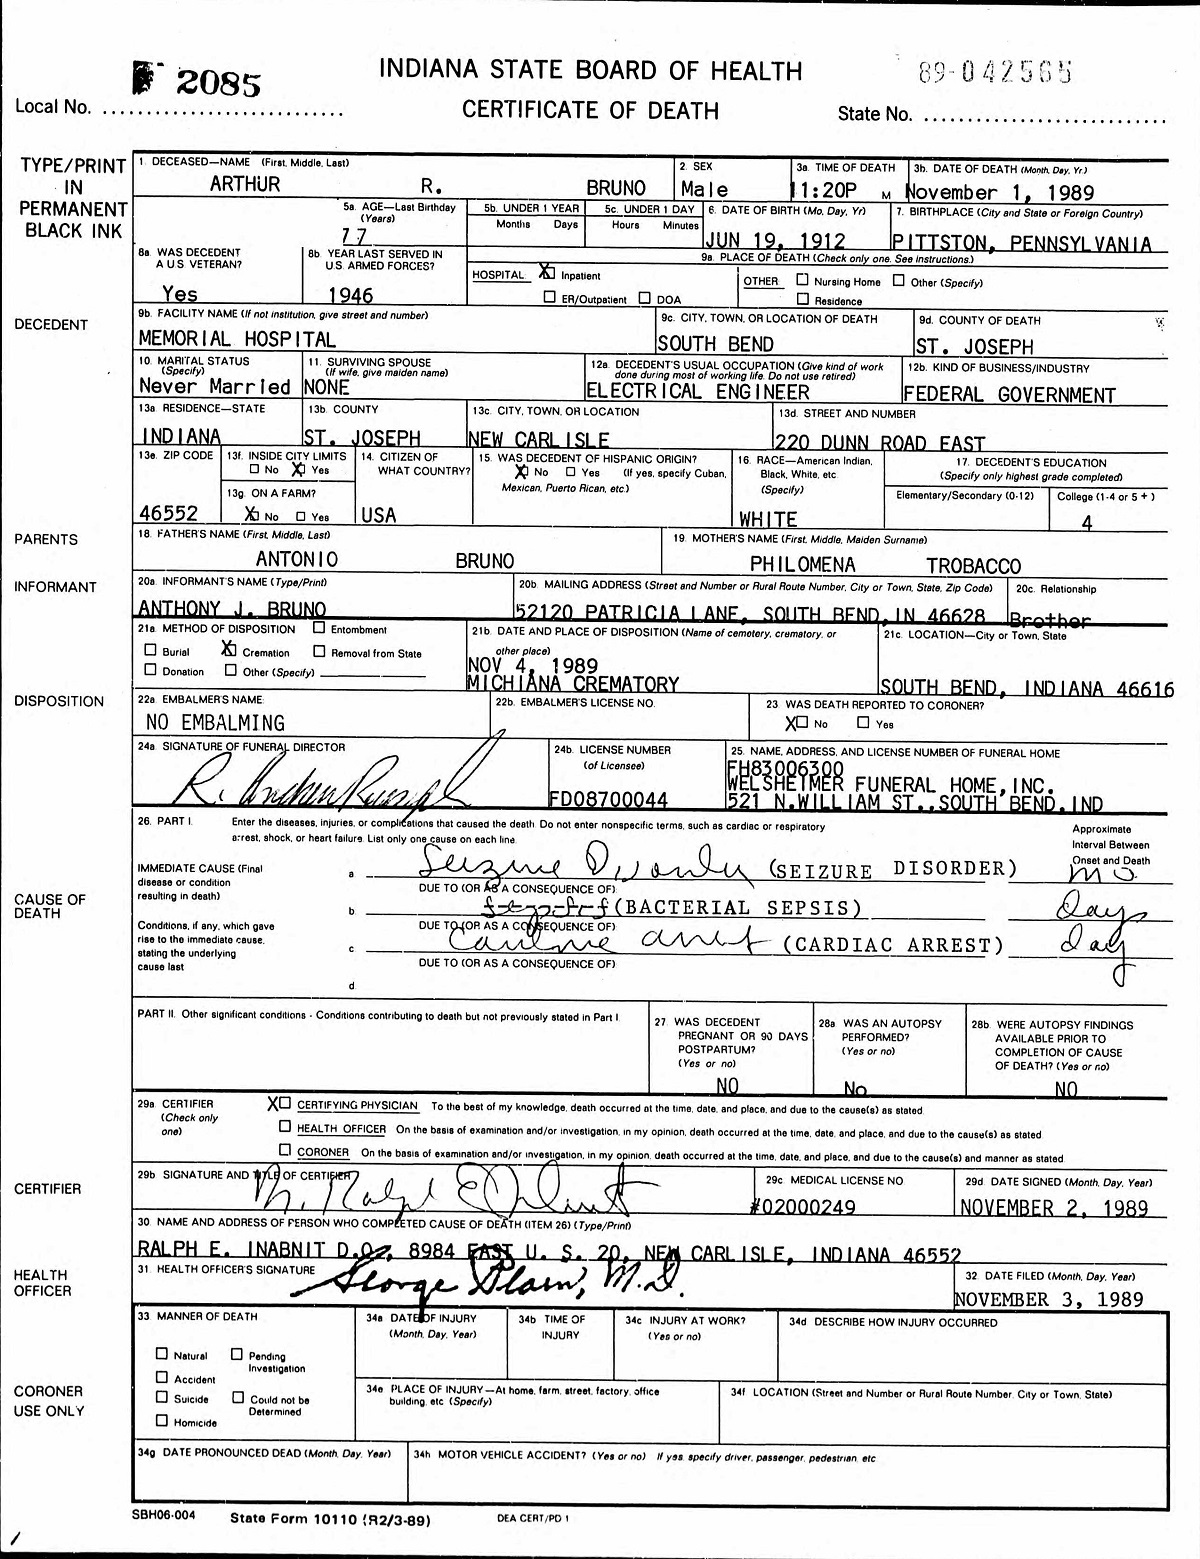 Arthur Bruno Death Certificate